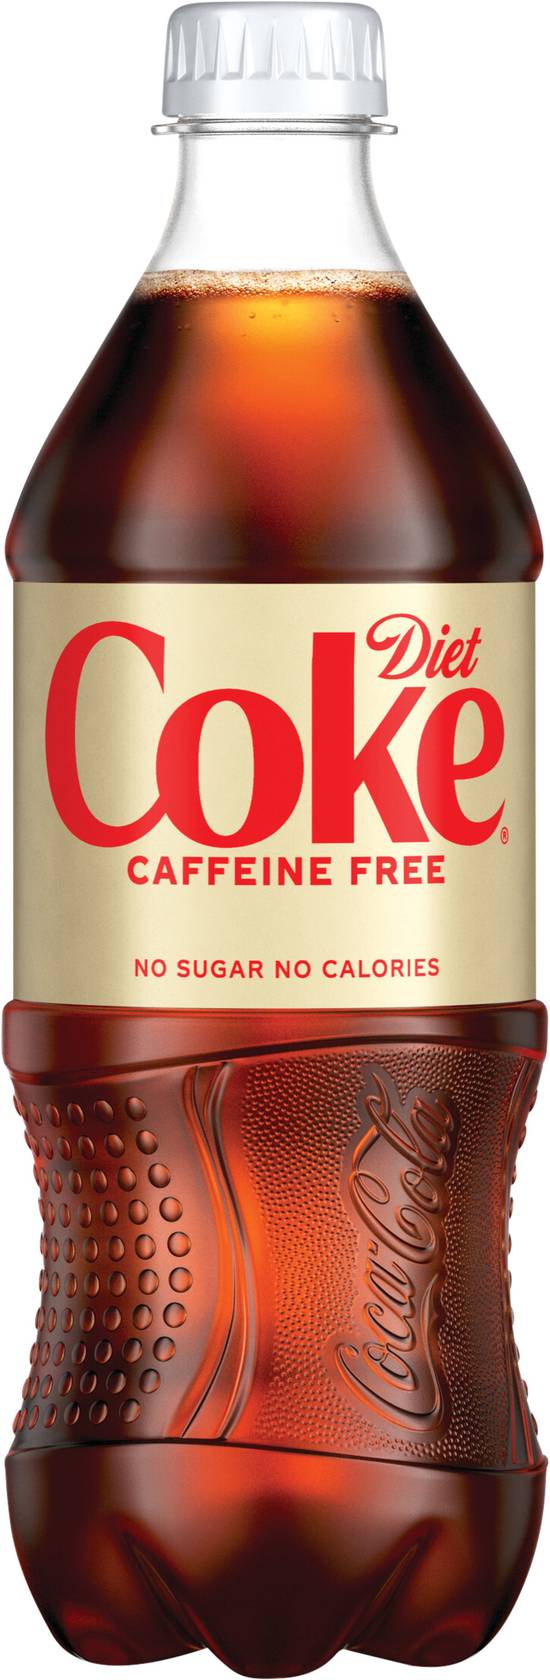 Diet Coke Caffeine Free Soda (20 fl oz)